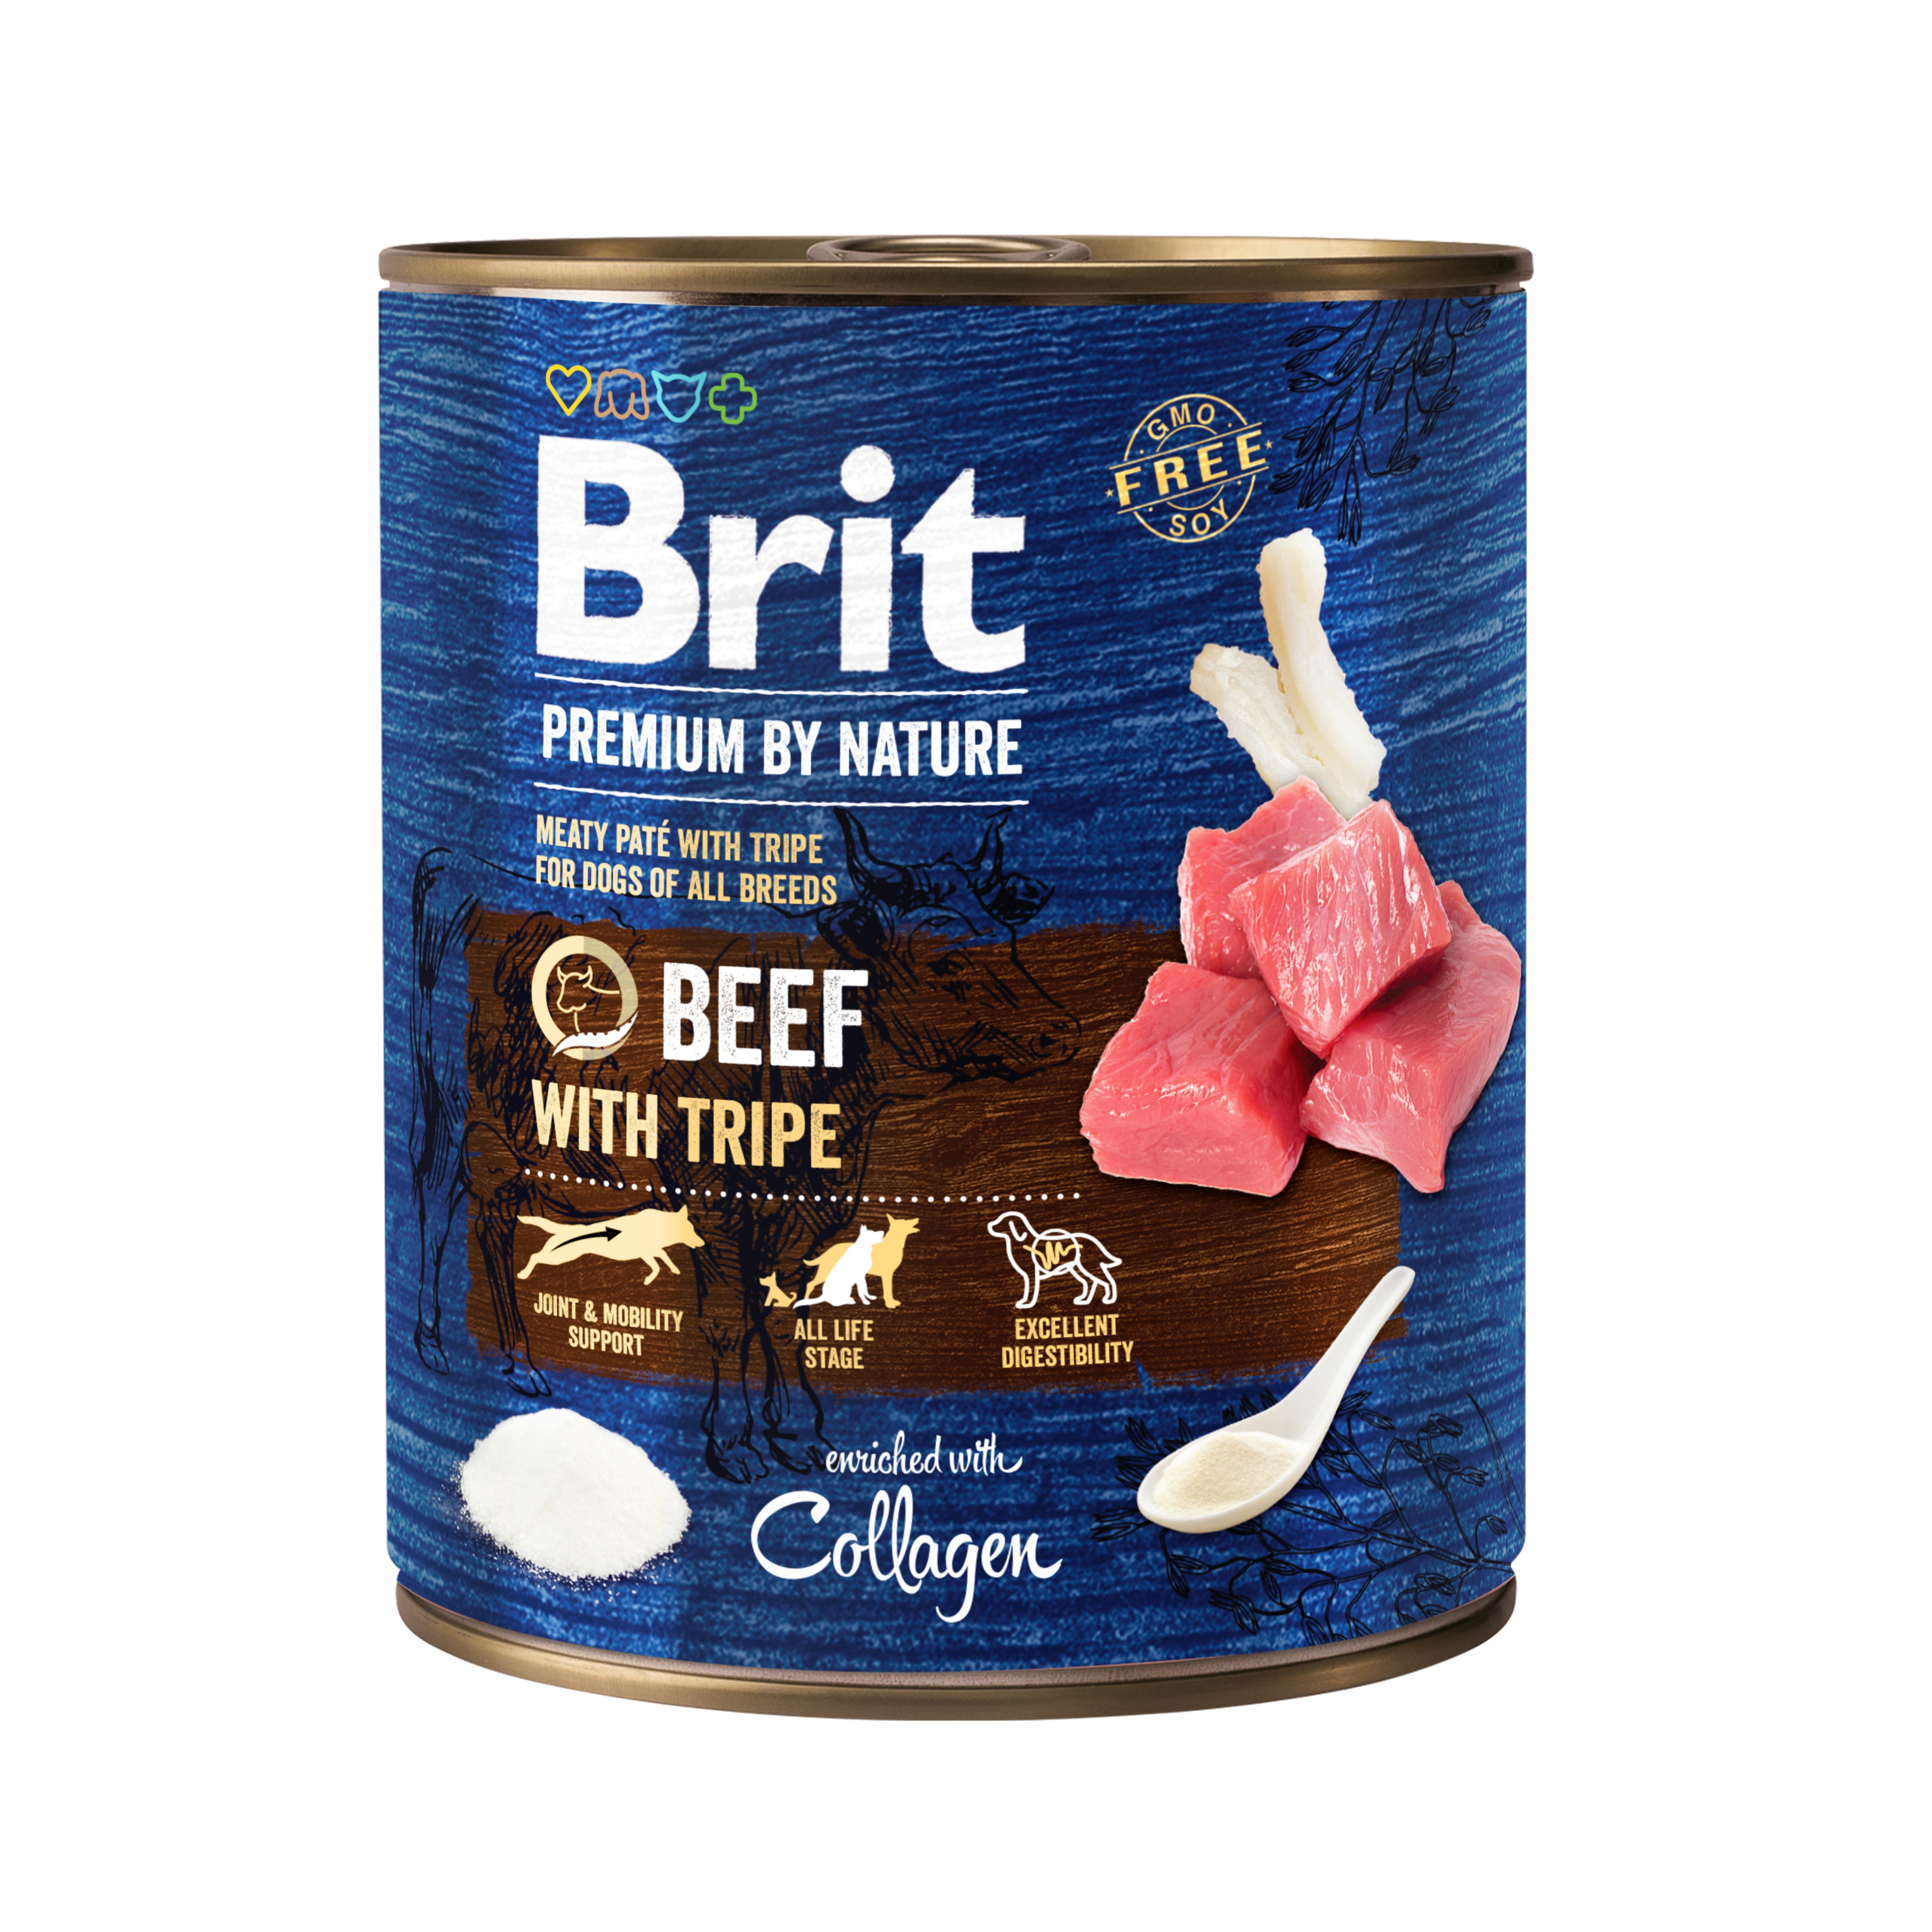 Беззерновой влажный корм для собак Brit Premium by Nature, говядина с требухой, 800 г - фото 1